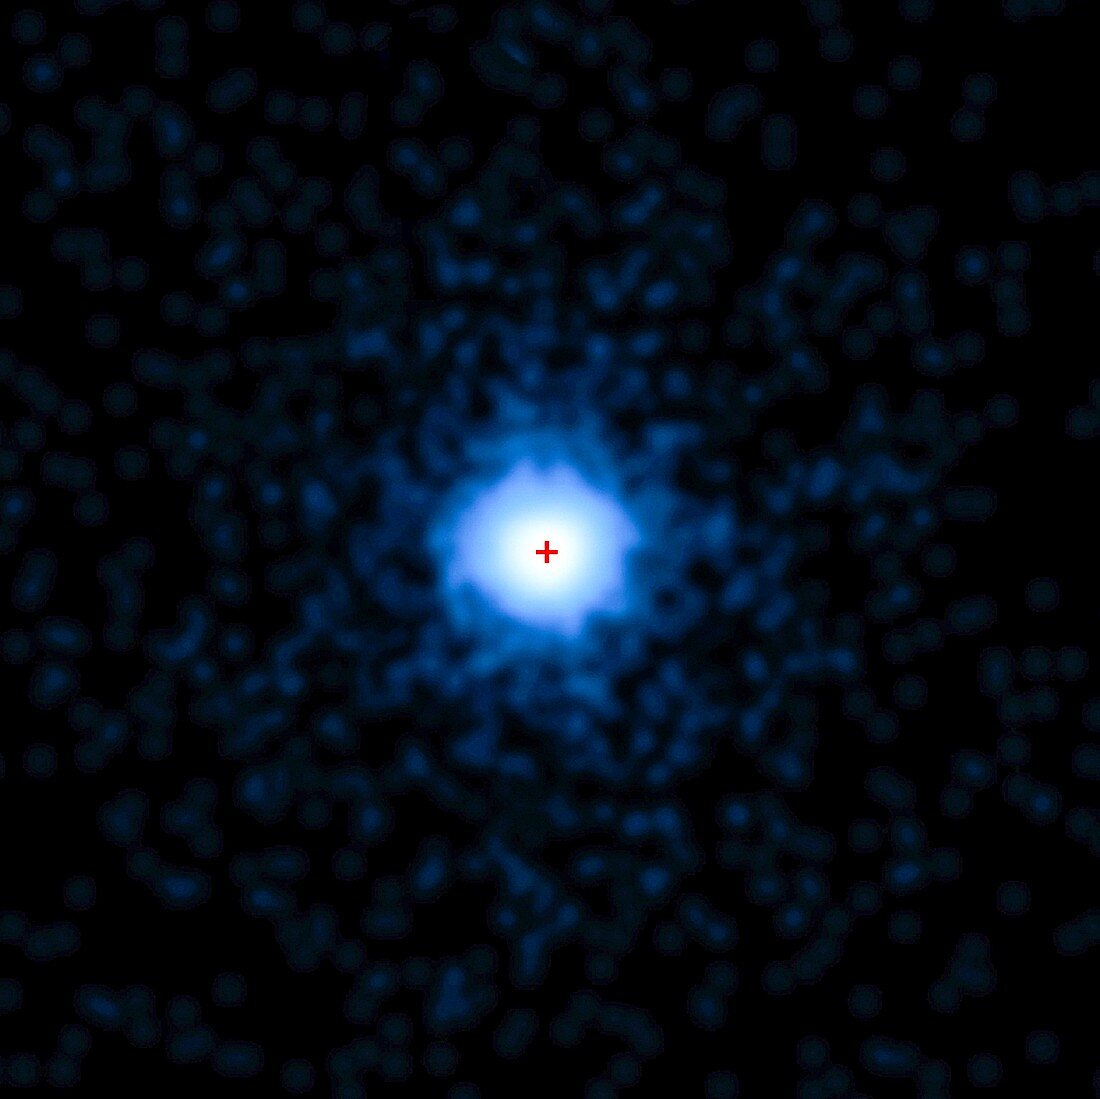 Gamma-ray burst 110328A, Chandra X-ray image